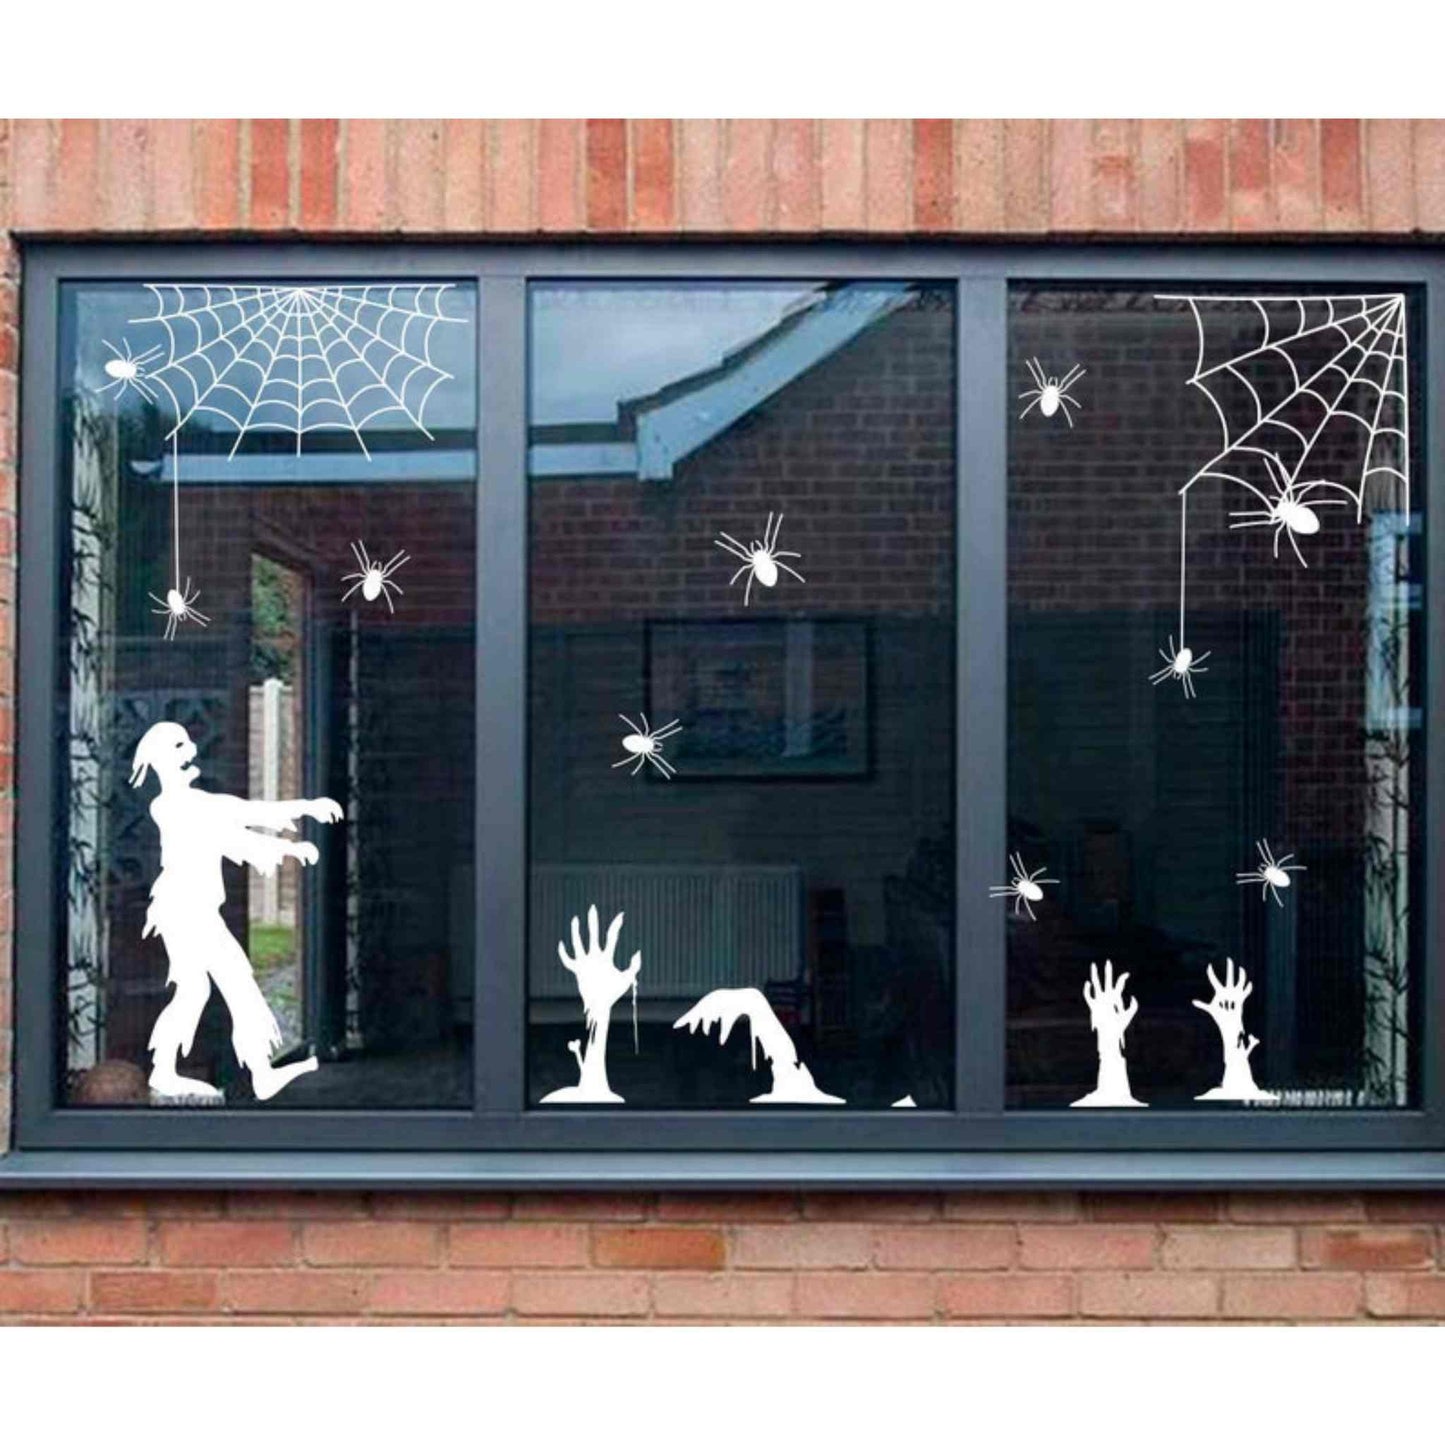 Set stickere de Halloween, cu zombie si paianjeni, pentru geam sau perete.